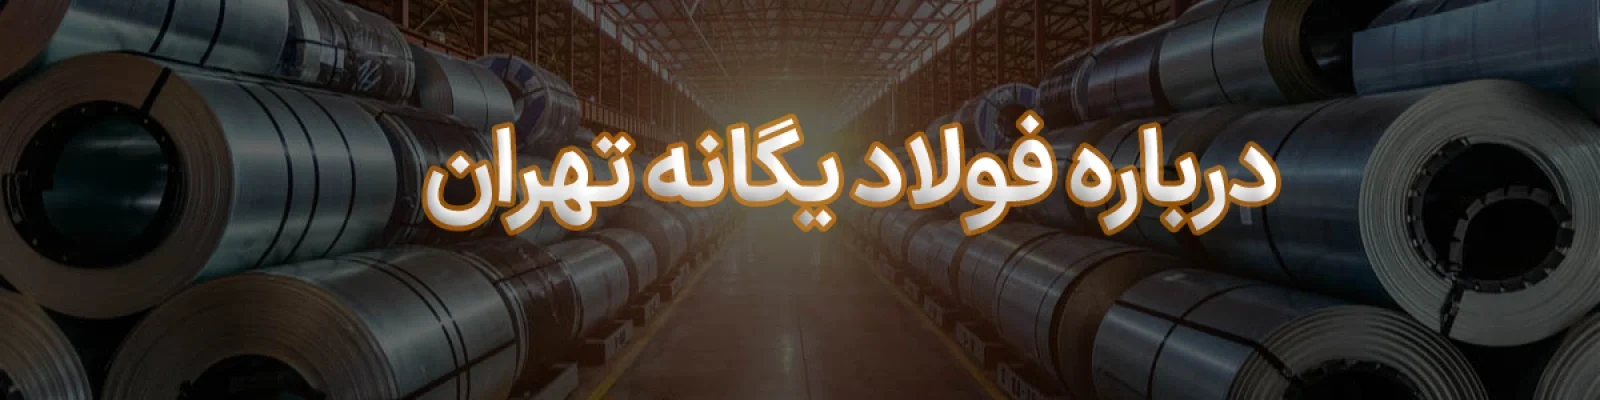 درباره شرکت فولاد یگانه تهران فولاد یگانه تهران